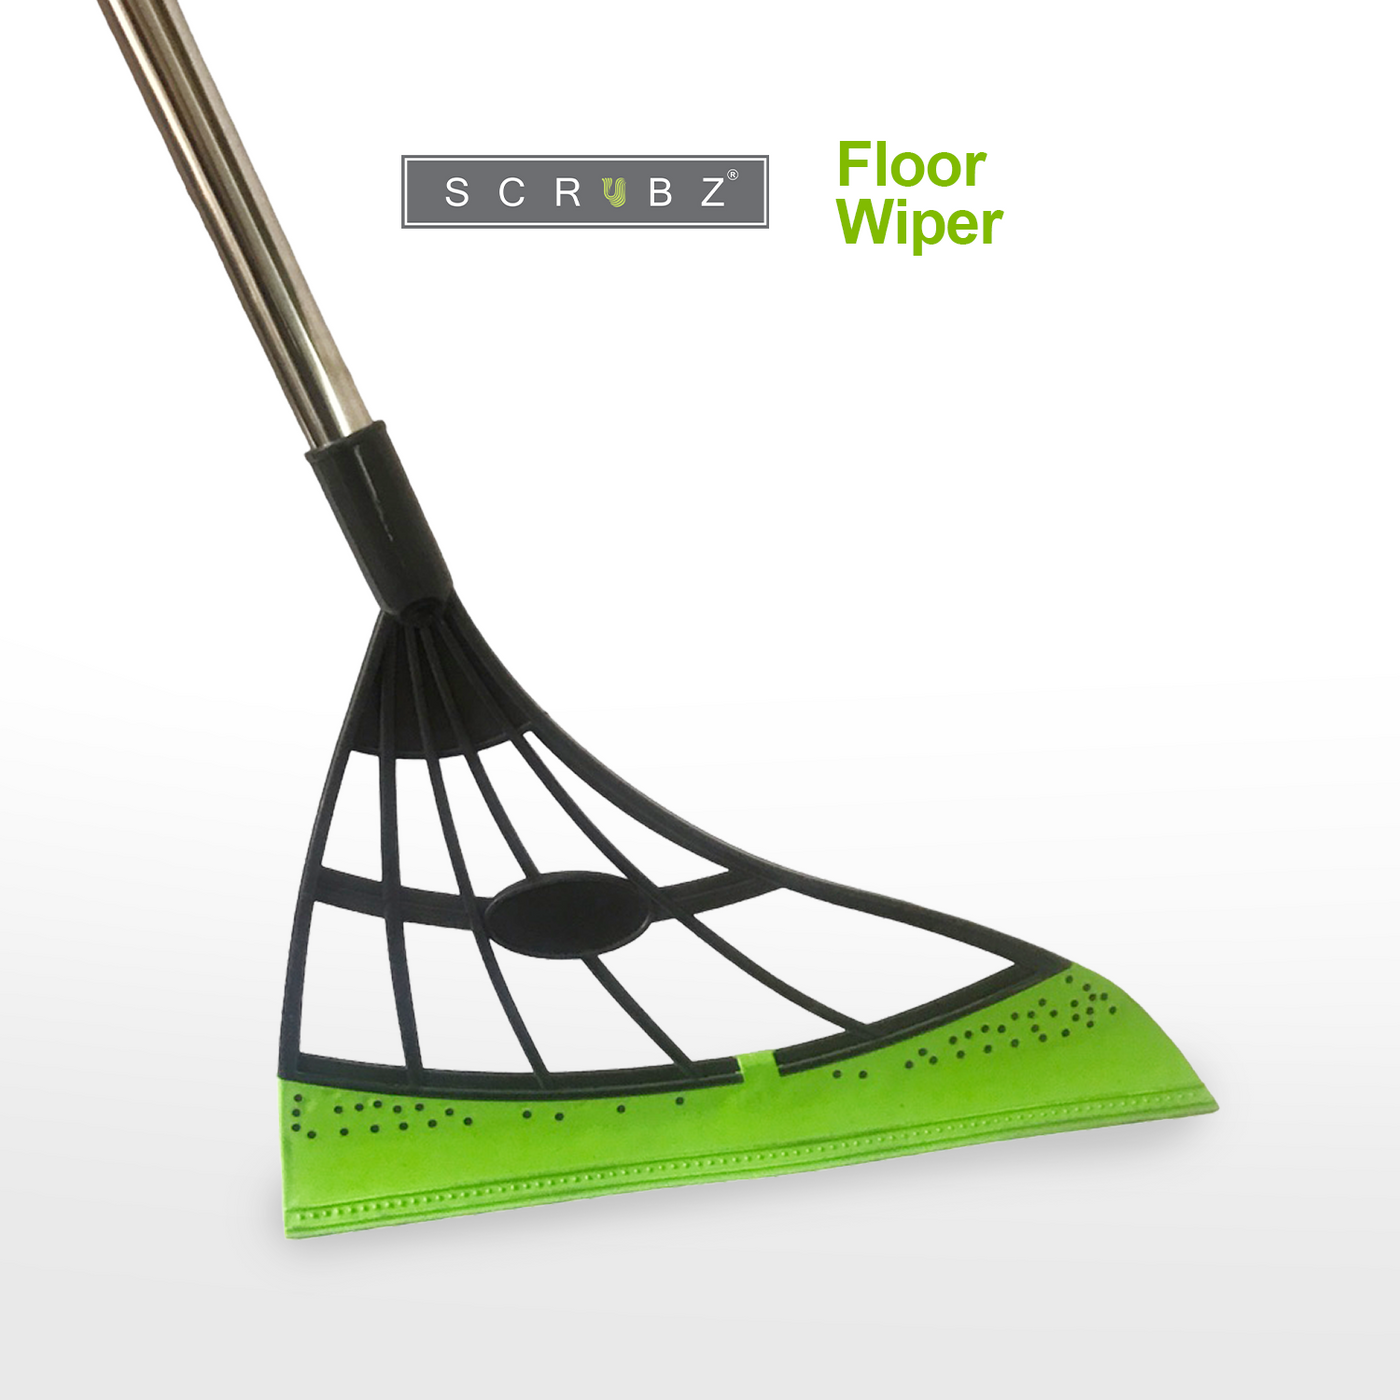 SCRUBZ Premium Floor Wiper, Rubber Blade/Foam Floor Sweeper